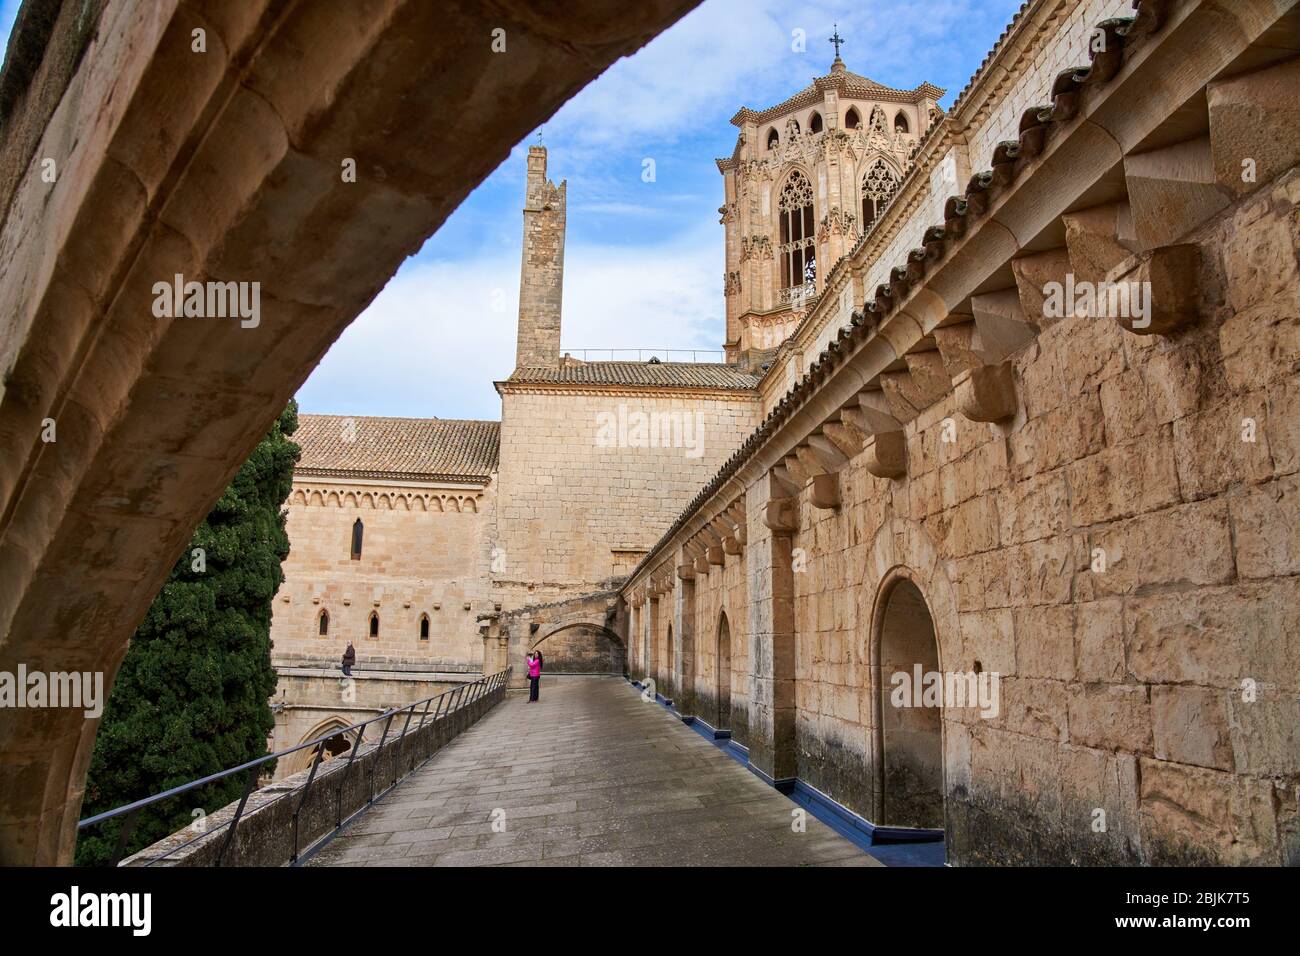 Monastery of Santa Maria de Poblet, Tarragona province, Catalonia, Spain, Europe Stock Photo